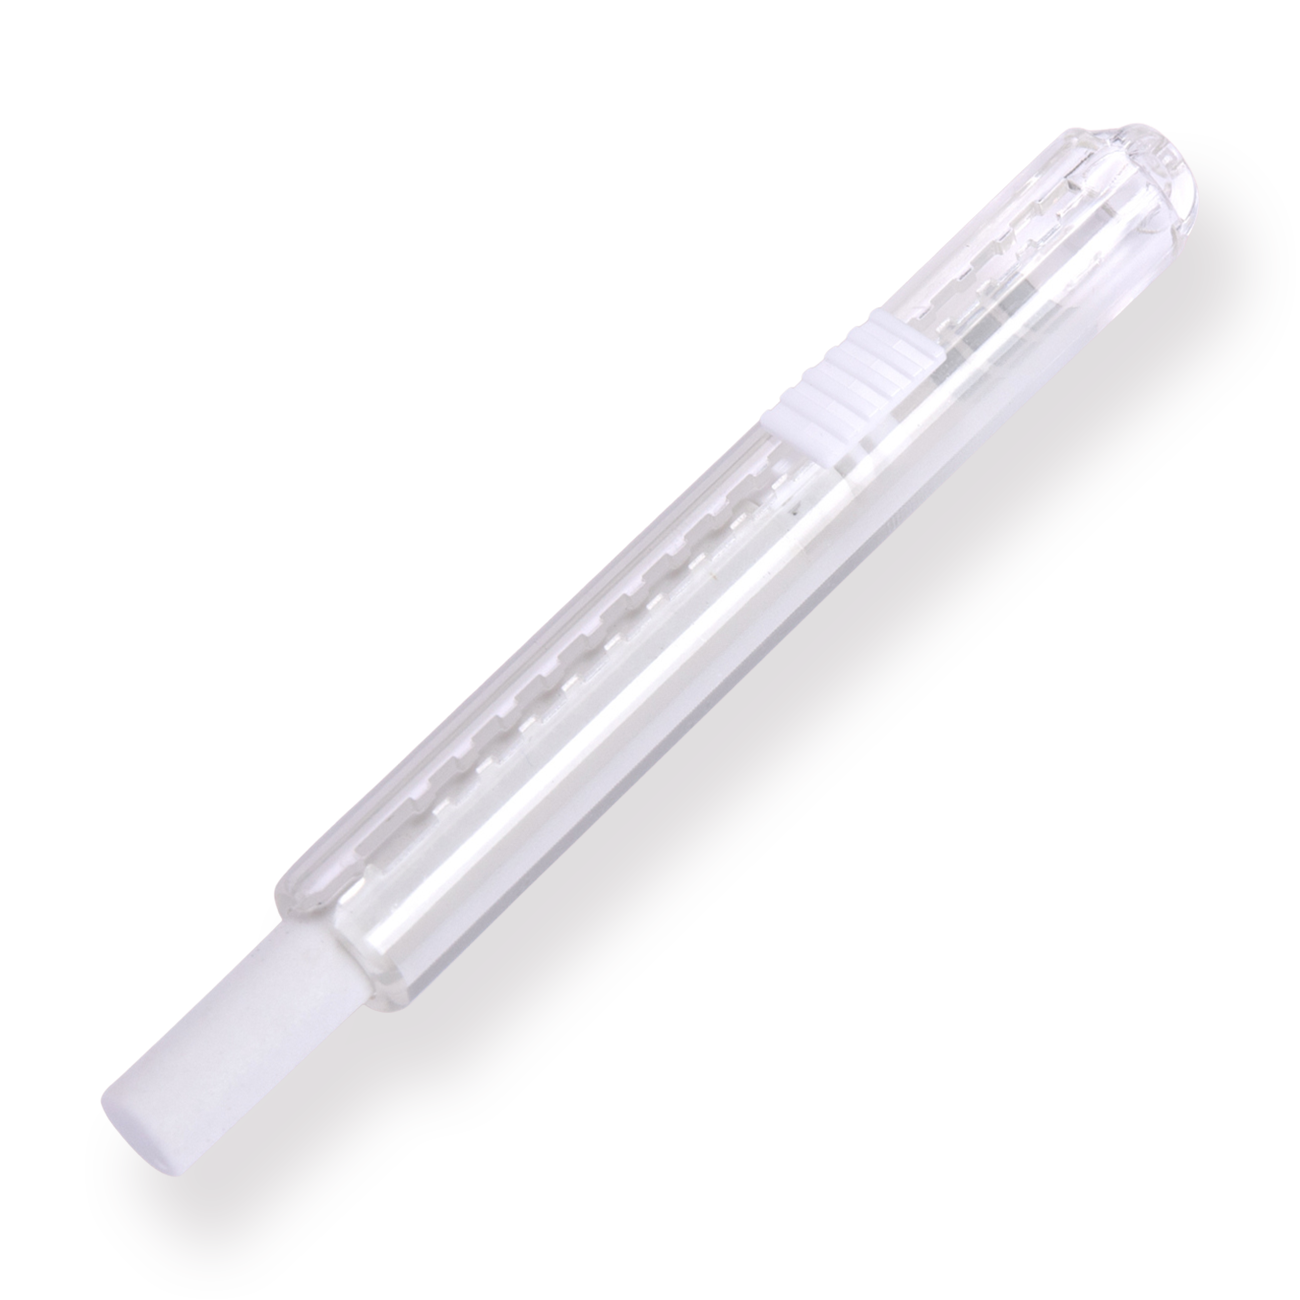 Pentel Borrador mini de alto polímero ZE82 - Blanco